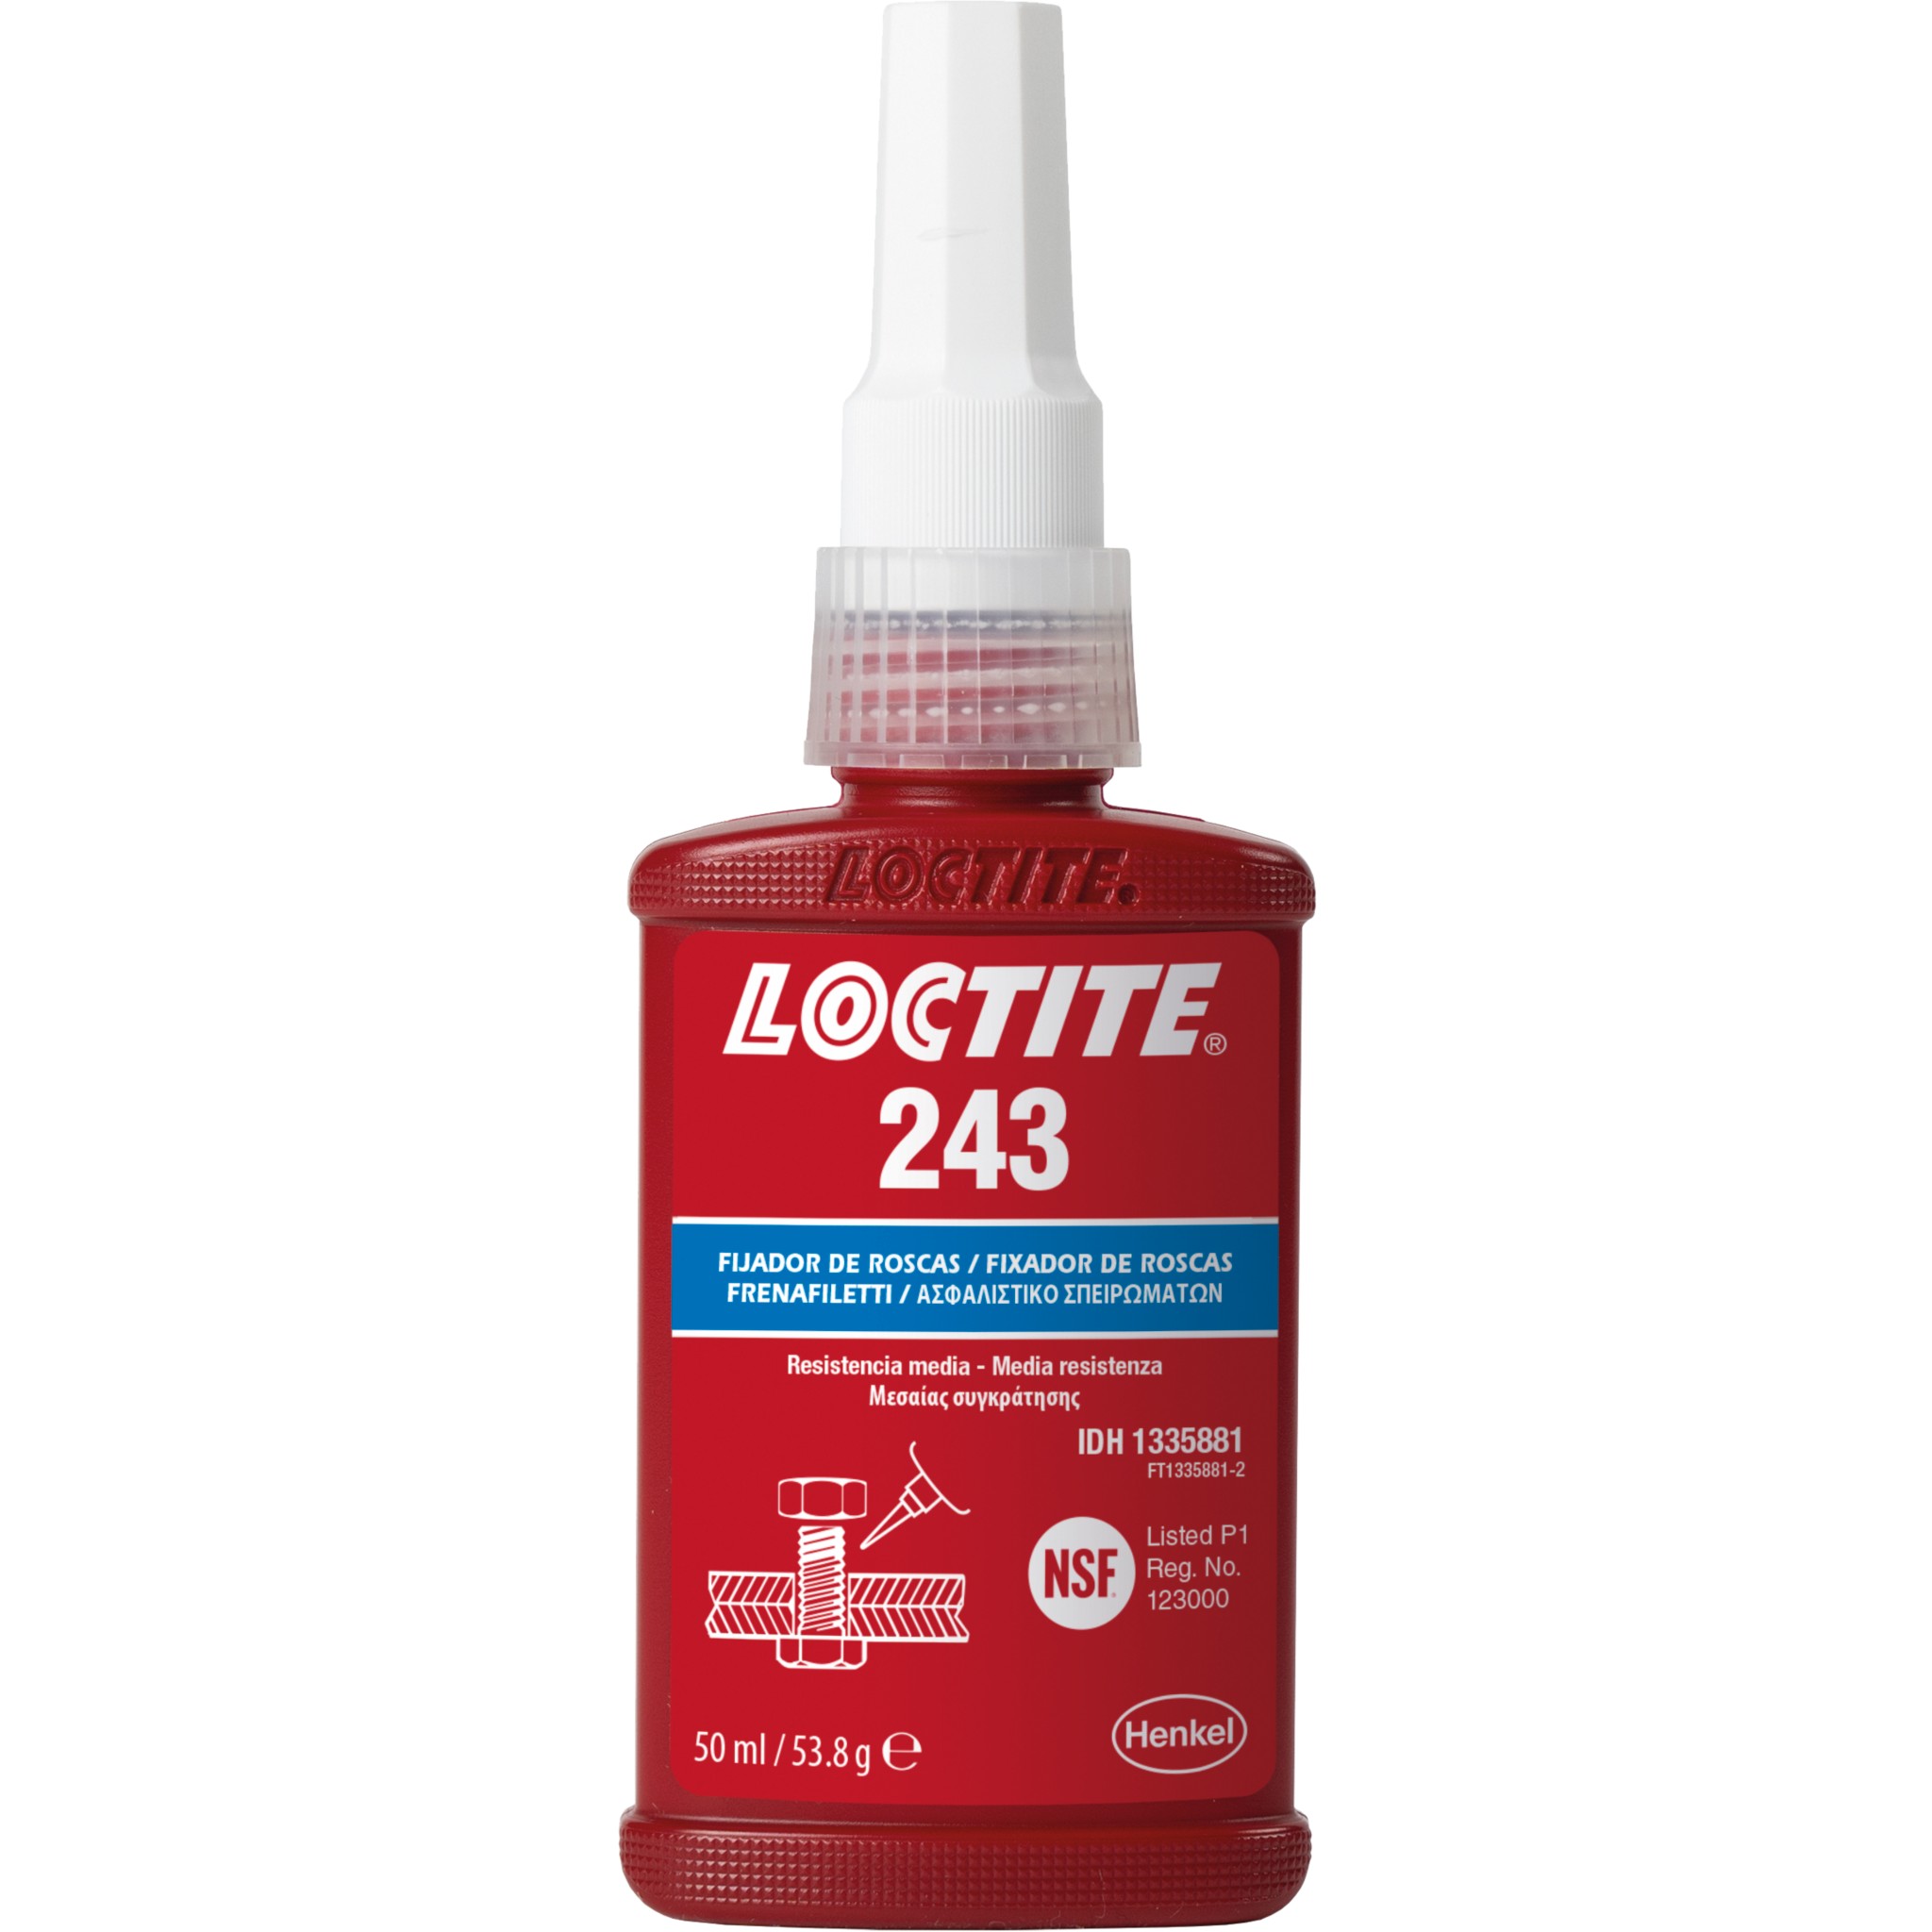 Loctite Frenafiletti per Viti 243 Resistenza media, 5 ml